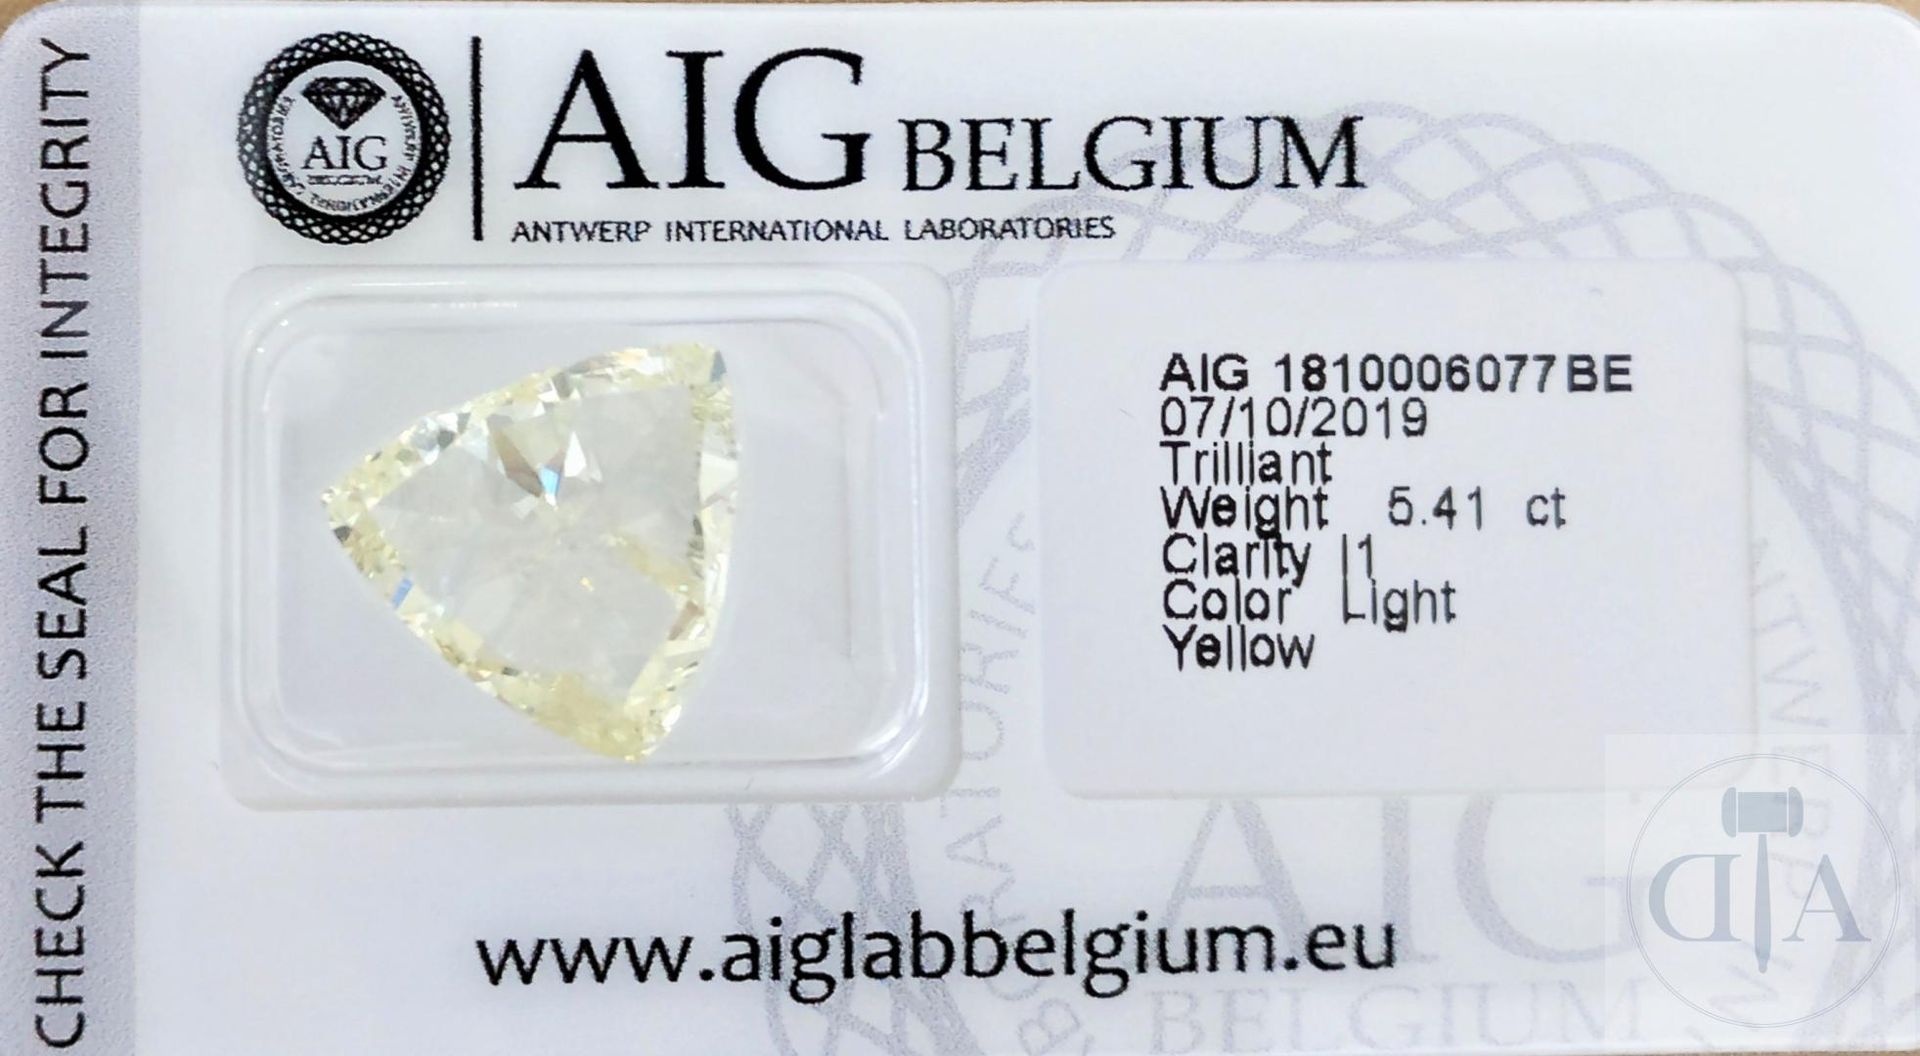 Null 5.41 克拉经 AIG 认证的高品质三角形钻石，令人印象深刻

- AIG 证书编号：1810006077BE 
- 形状三角形
- 克拉重量： 5&hellip;